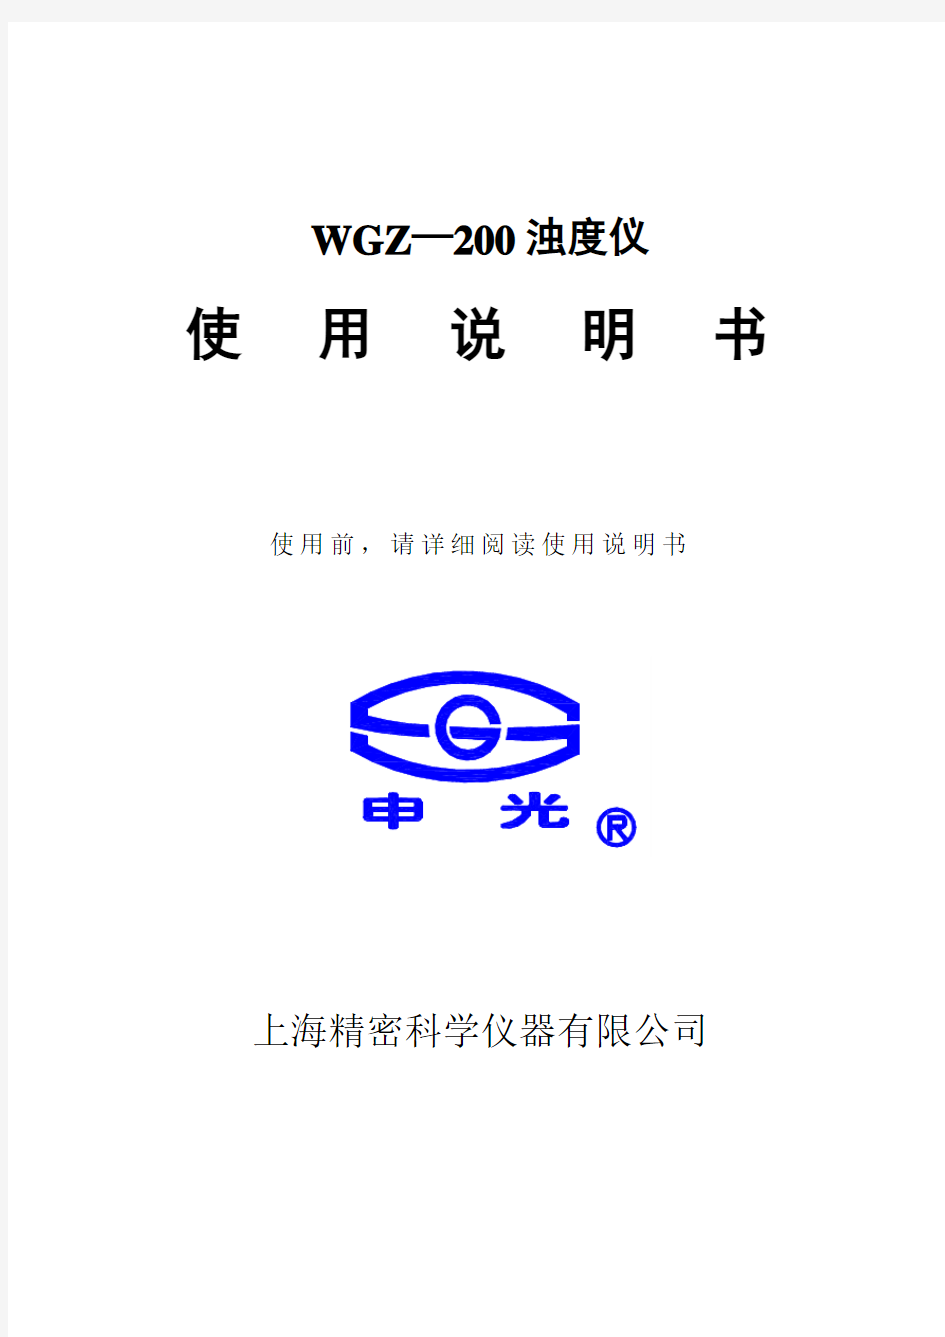 WGZ-200浊度仪说明书